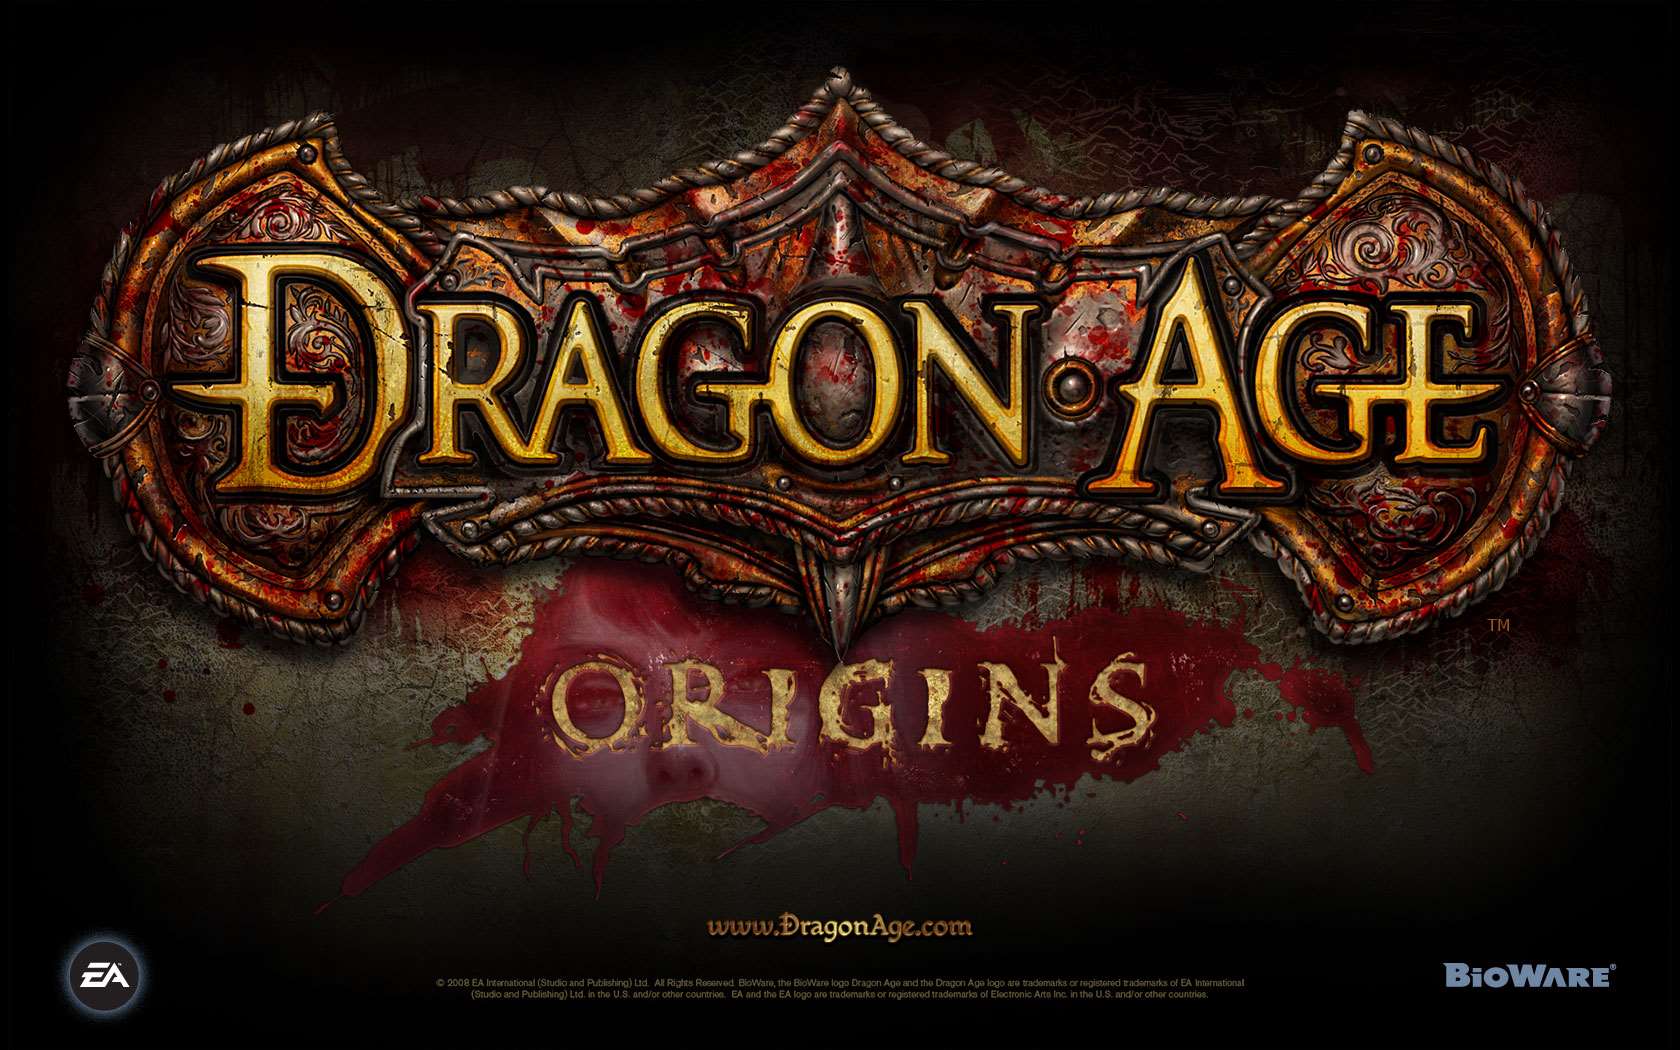 Dorian  Dragon Age Inquisition  Dragon Age Origins Wallpaper 37802798   Fanpop